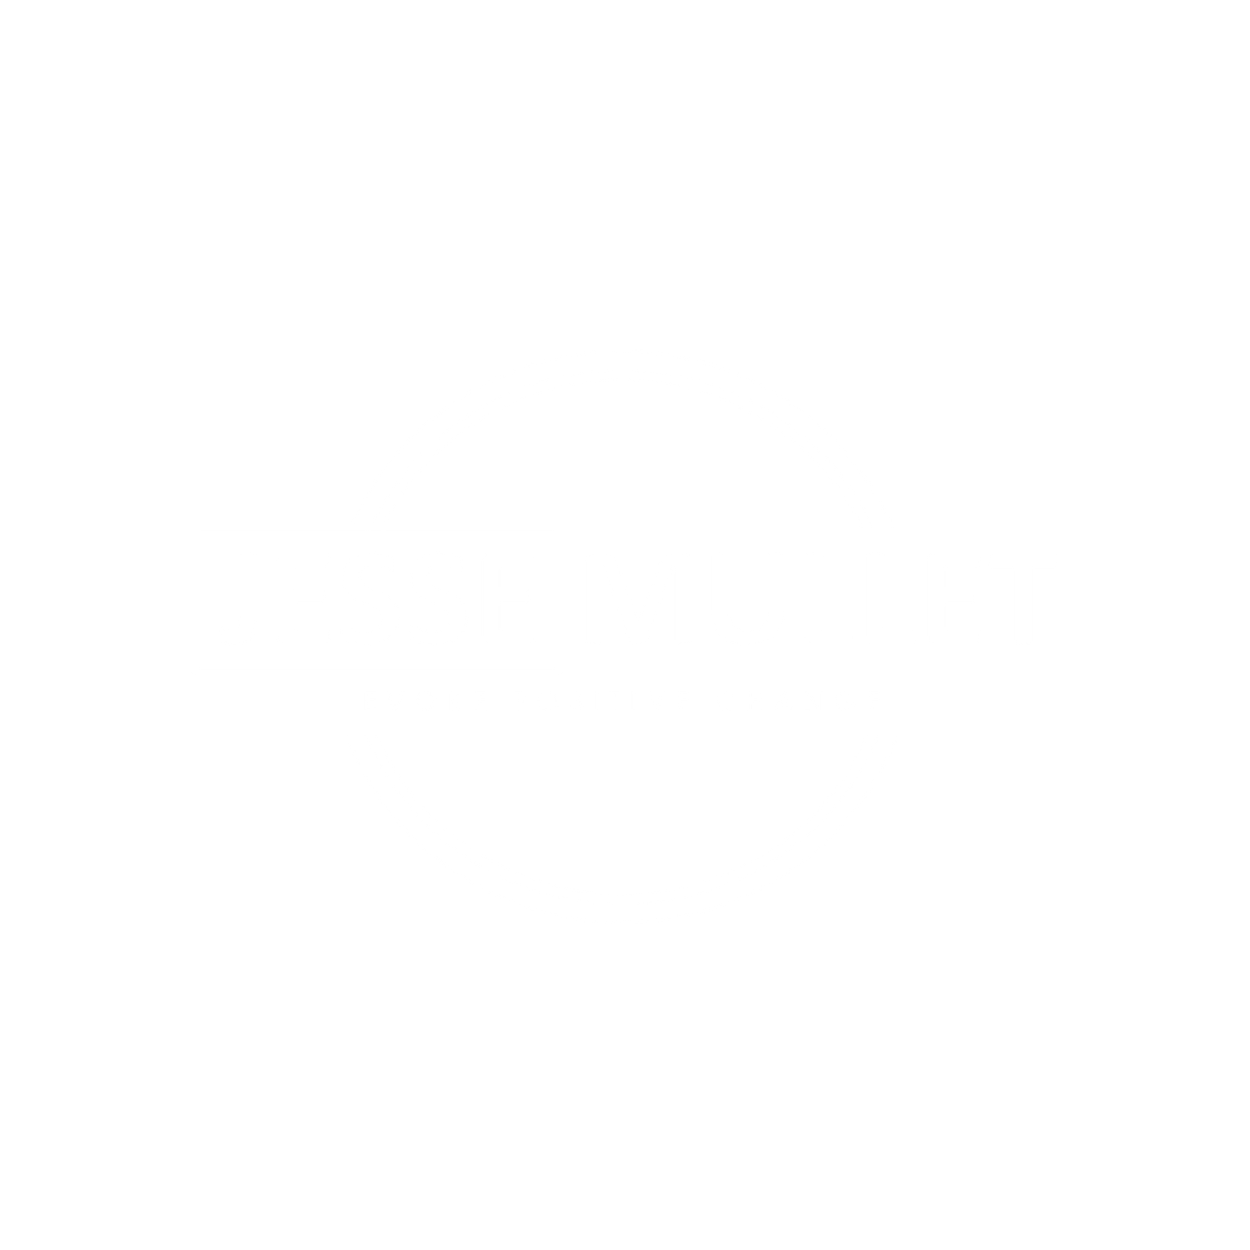 Jesse Mullet